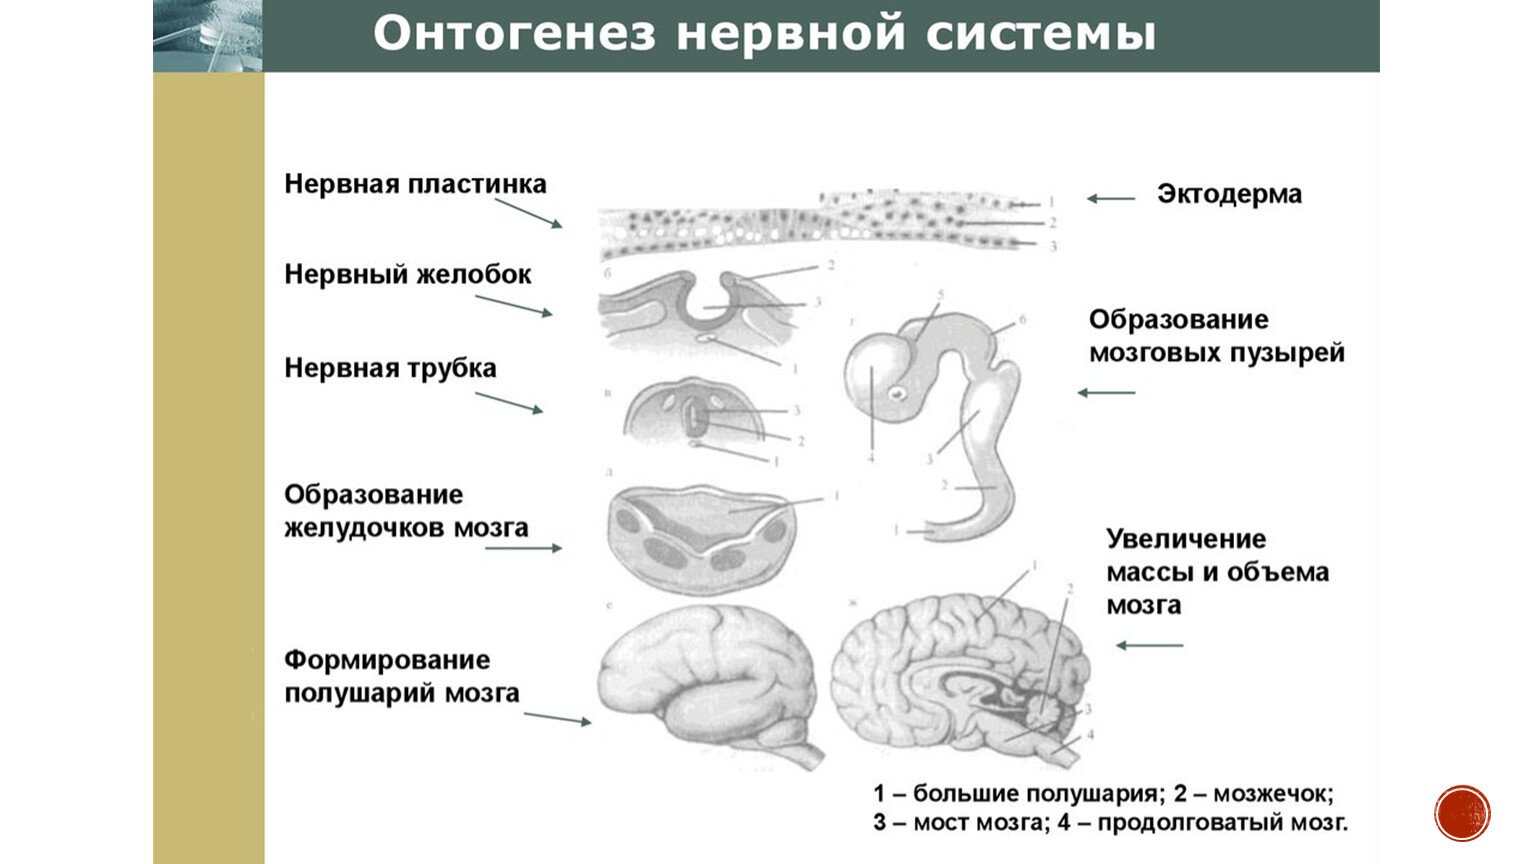 Эмбриогенез мозга человека